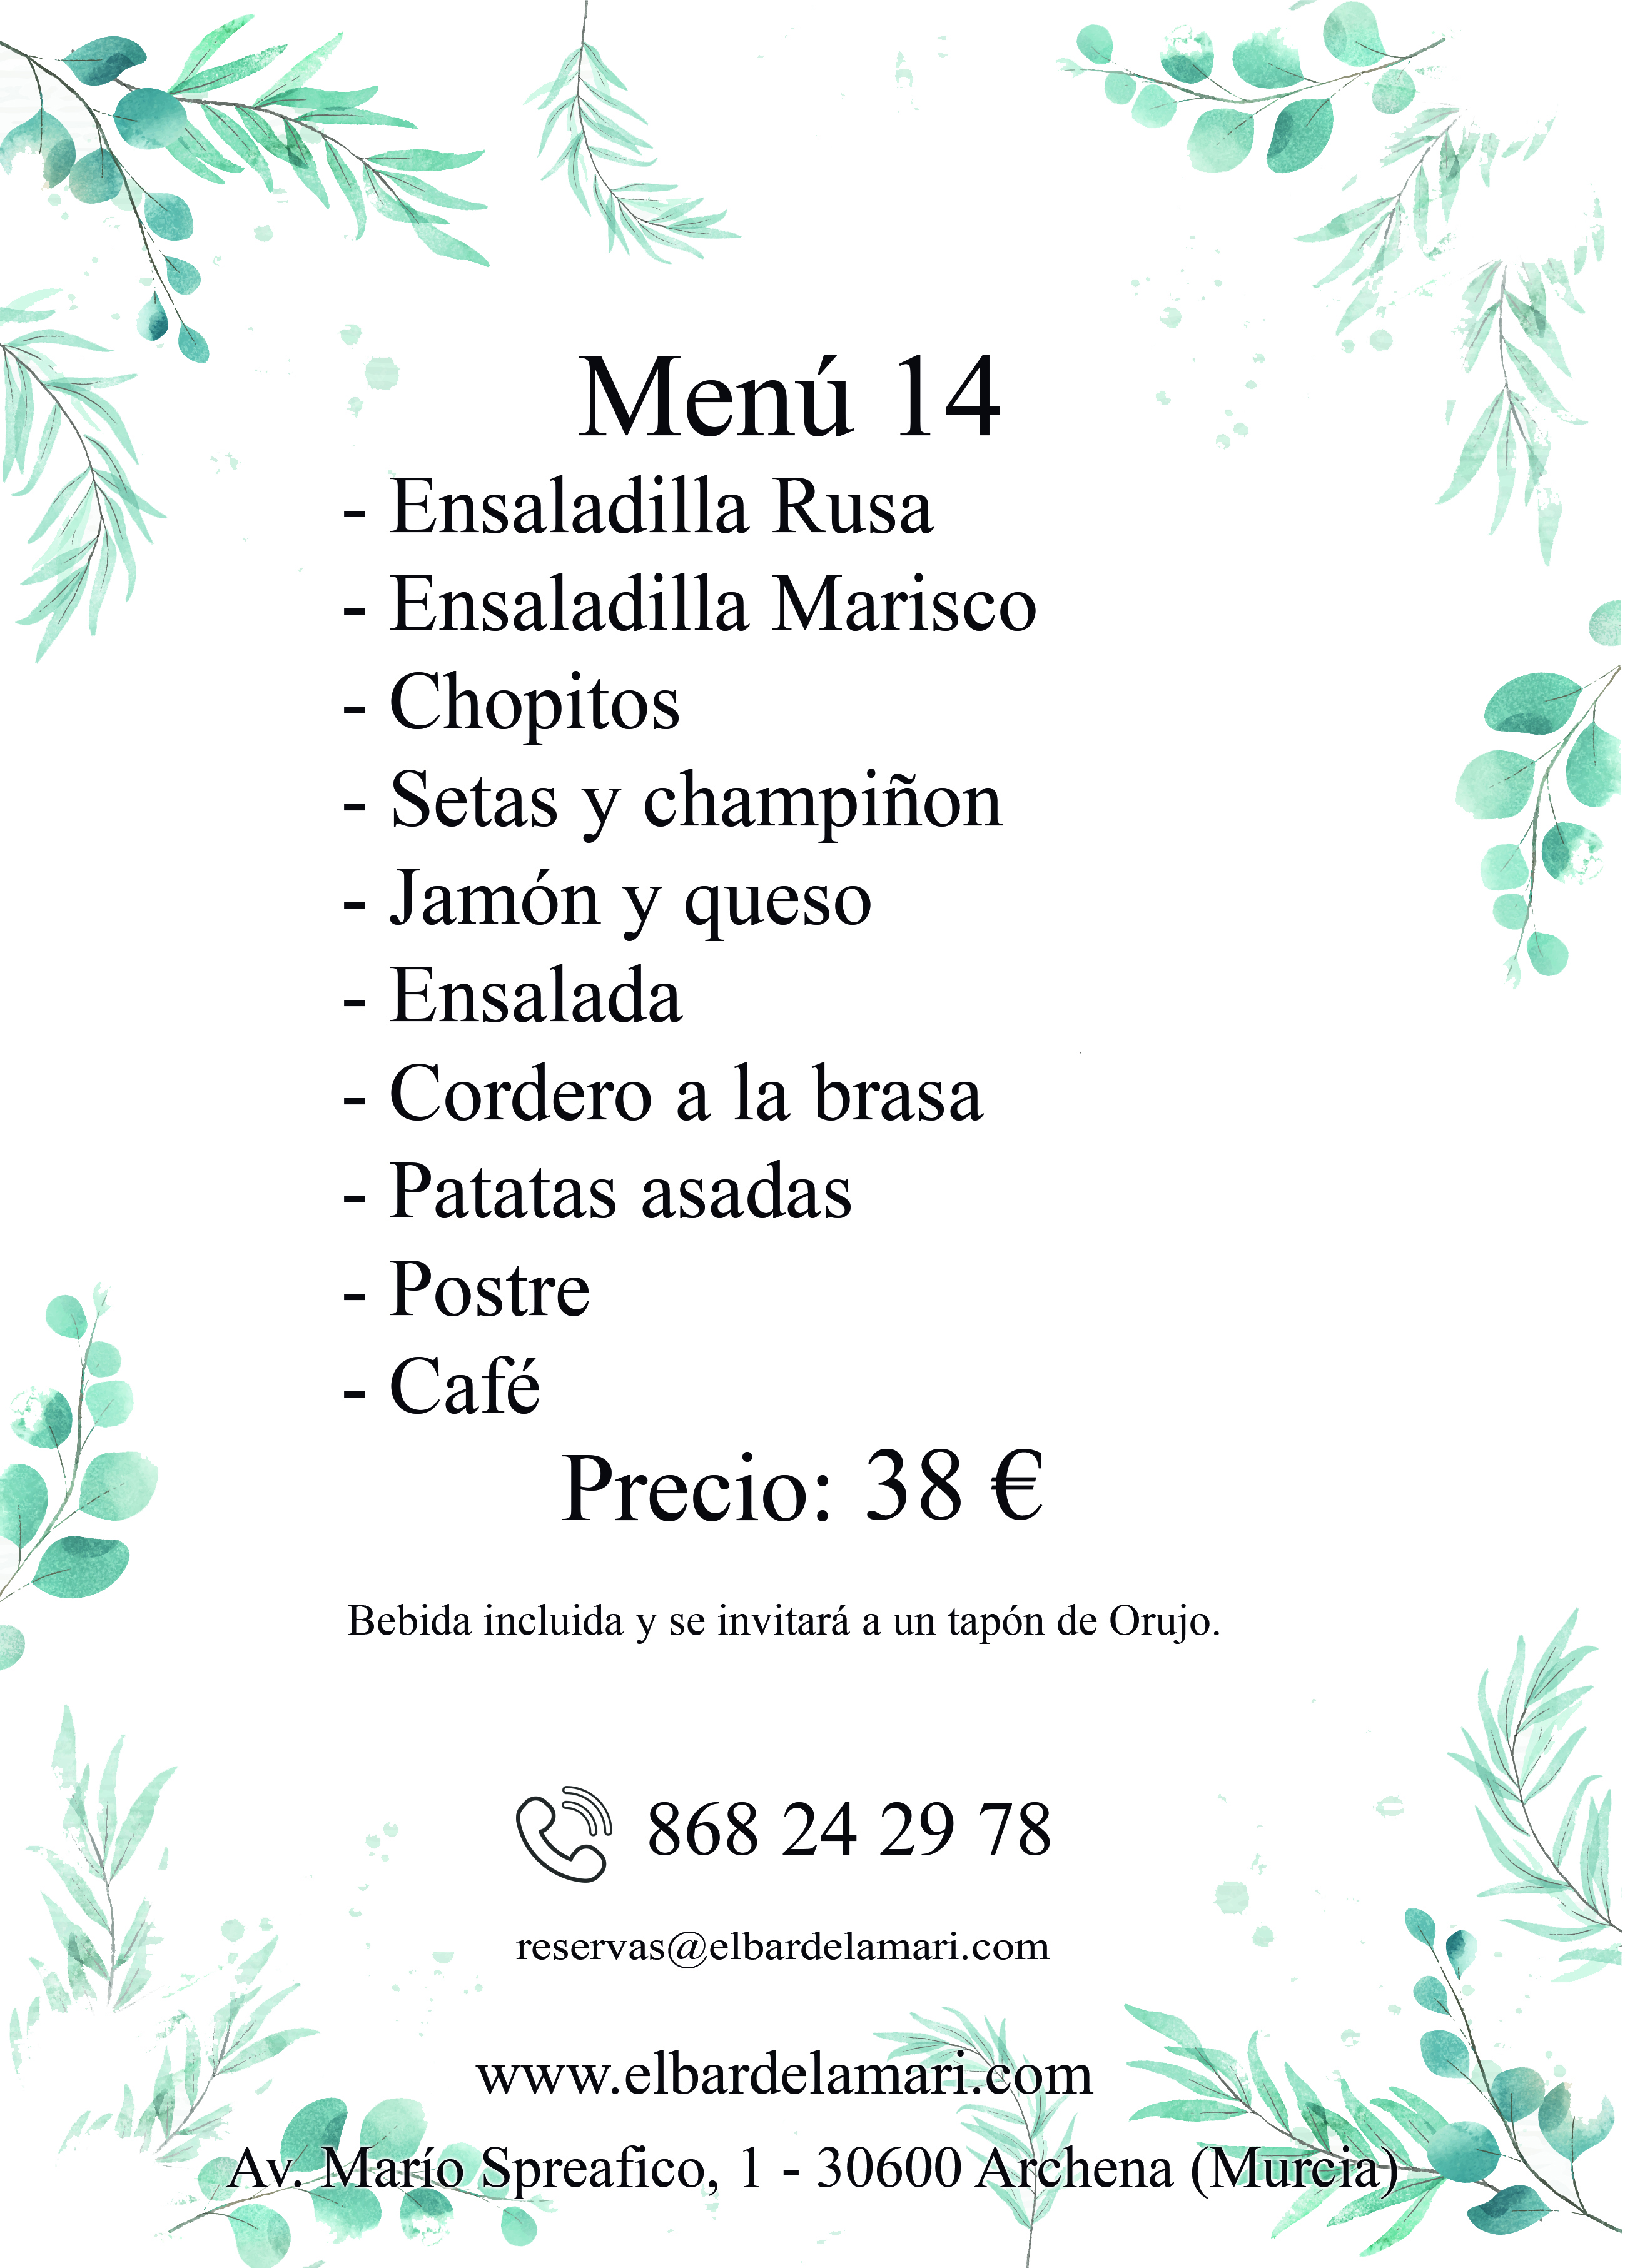 menu14